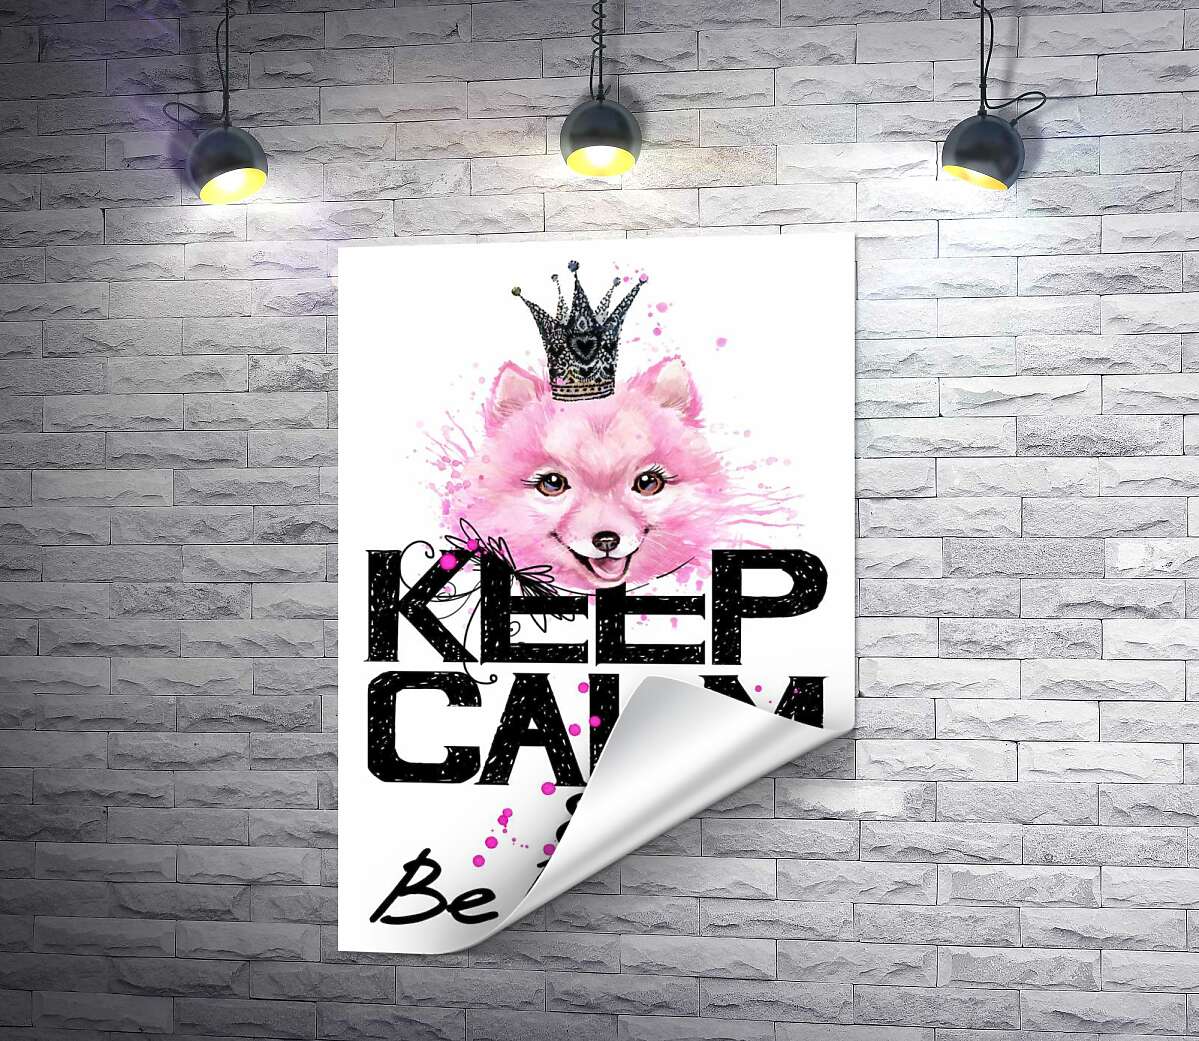 друк Рожевий померанський шпіц з ажурною короною над написом "keep calm and be princess"